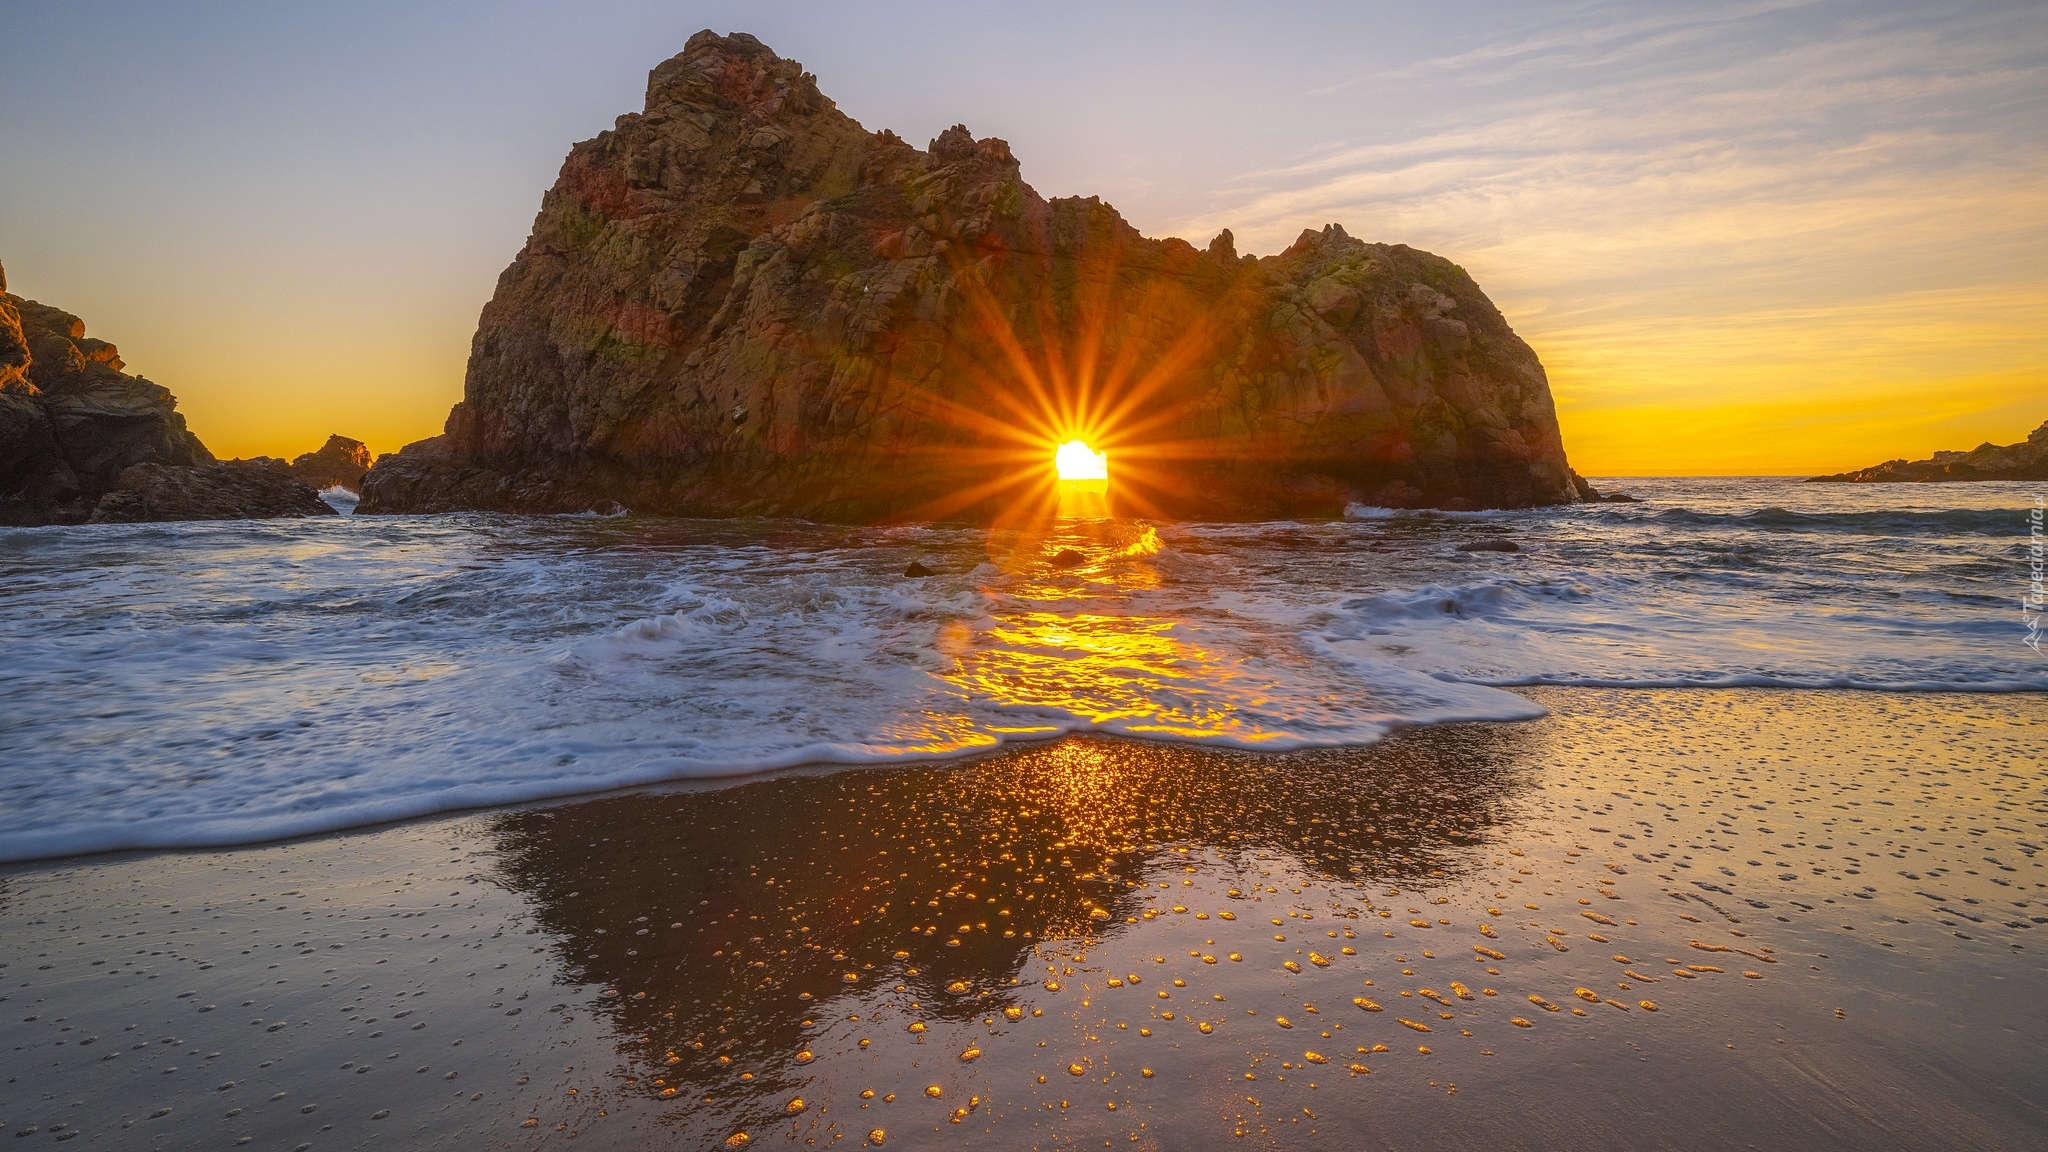 Skały, Keyhole Arch, Morze, Promienie słońca, Pfeiffer Beach, Wybrzeże, Big Sur, Kalifornia, Stany Zjednoczone